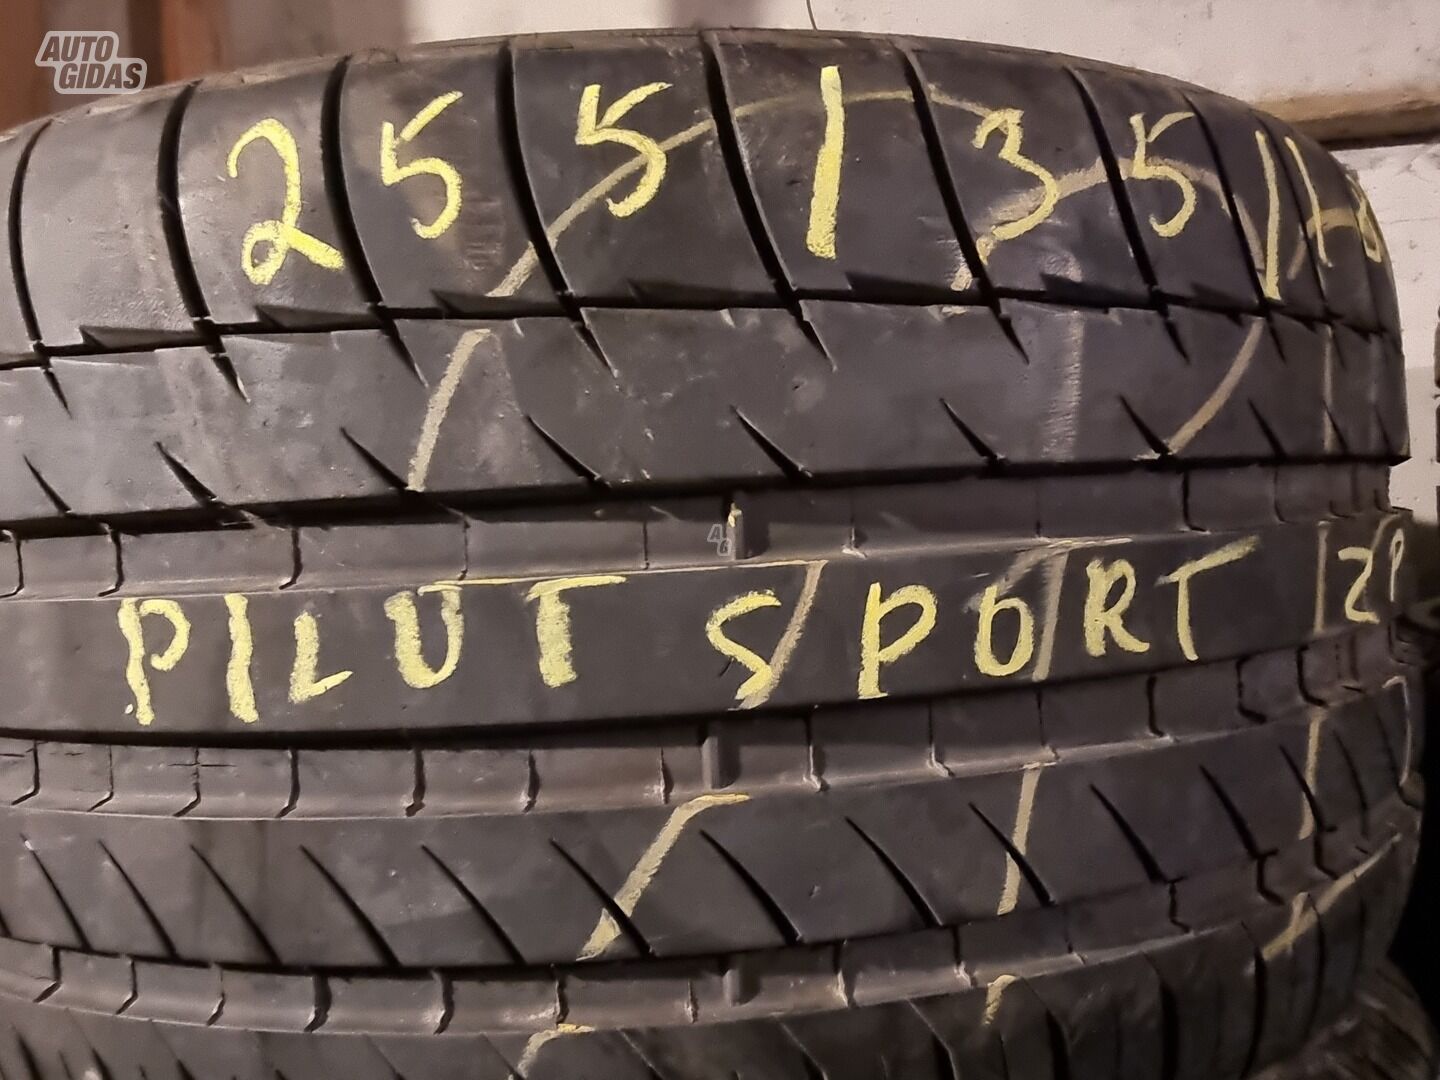 Michelin Pilot sport R18 летние шины для автомобилей